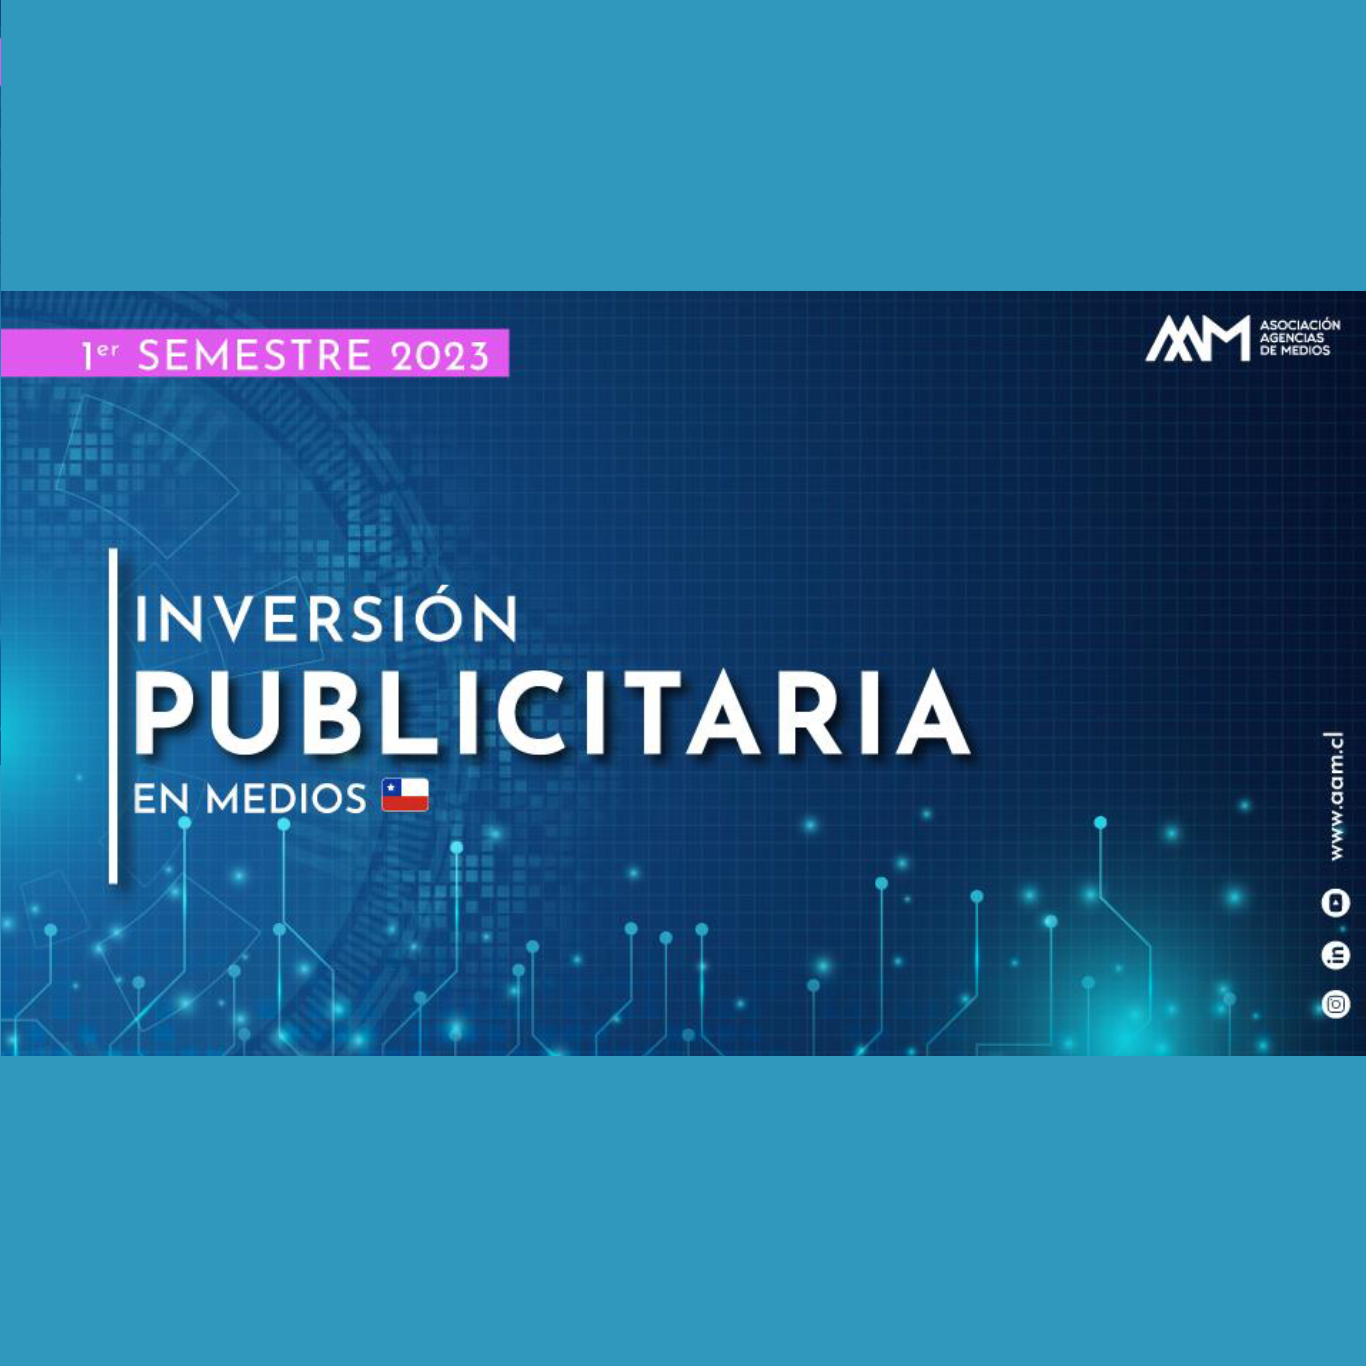 Estudio: Informe de inversión publicitaria en medios – 1er semestre 2023